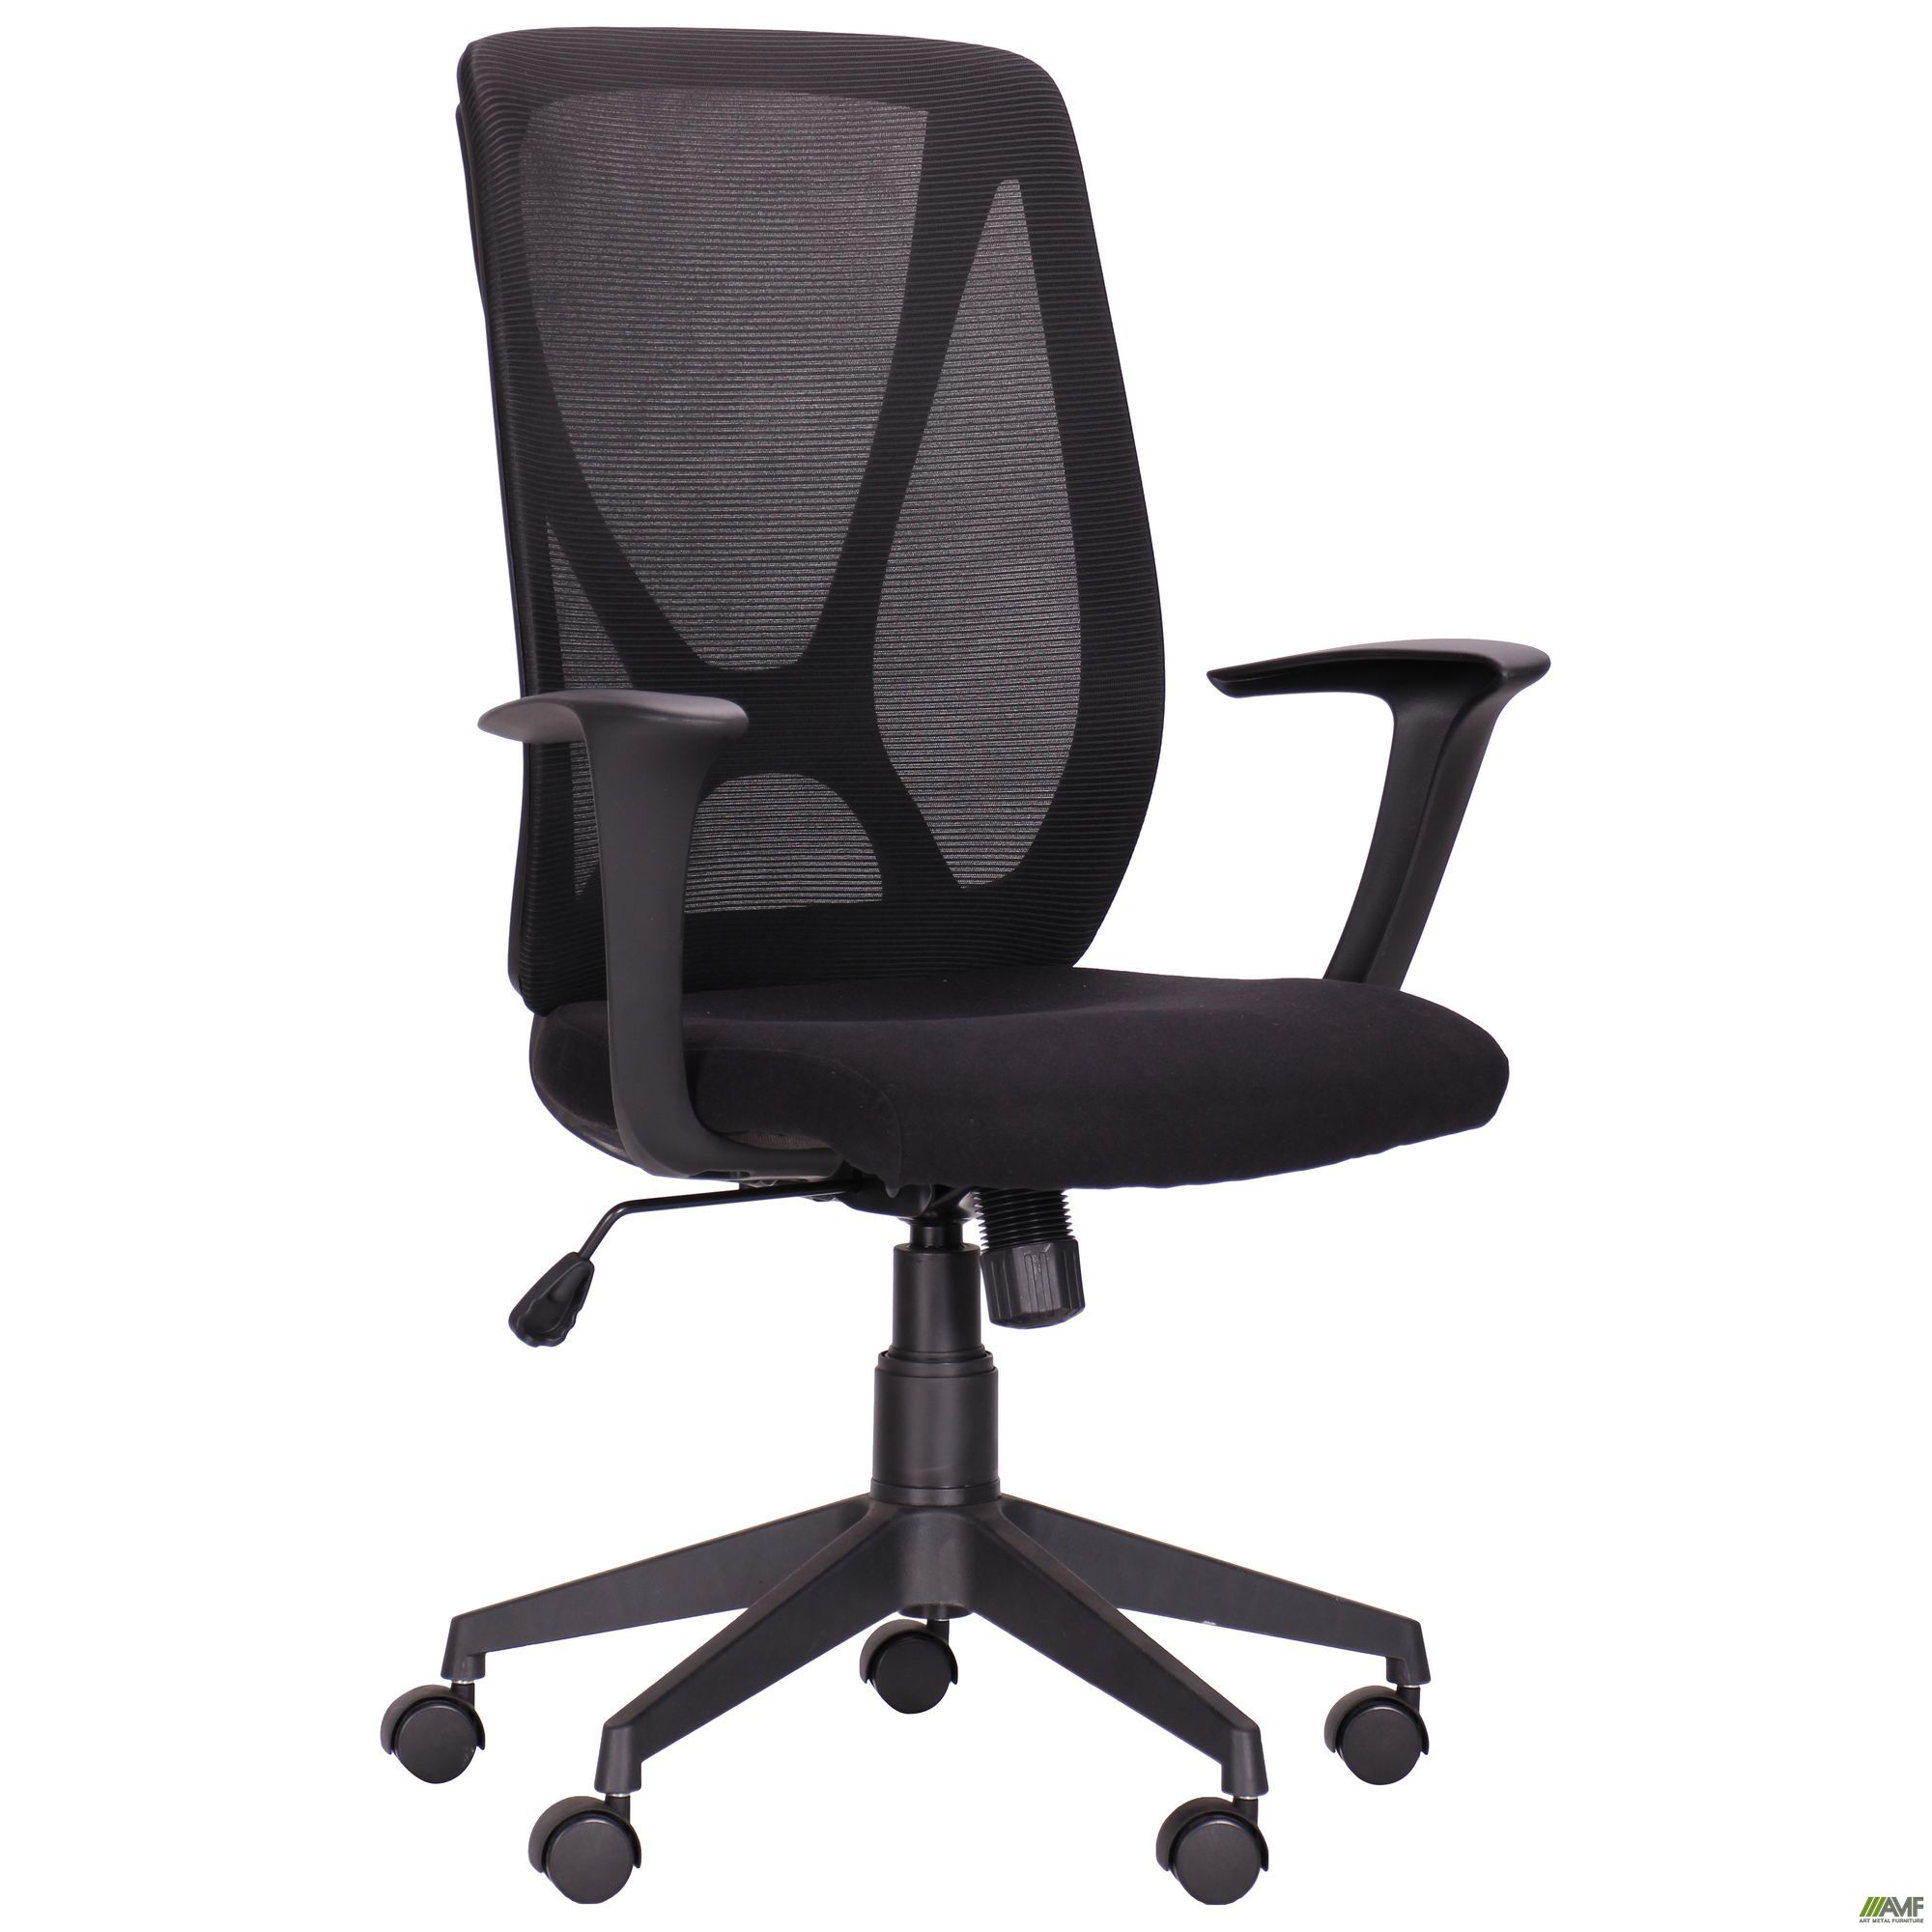 Фото 1 - Кресло Nickel Black сиденье Сидней-07/спинка Сетка SL-00 черная 